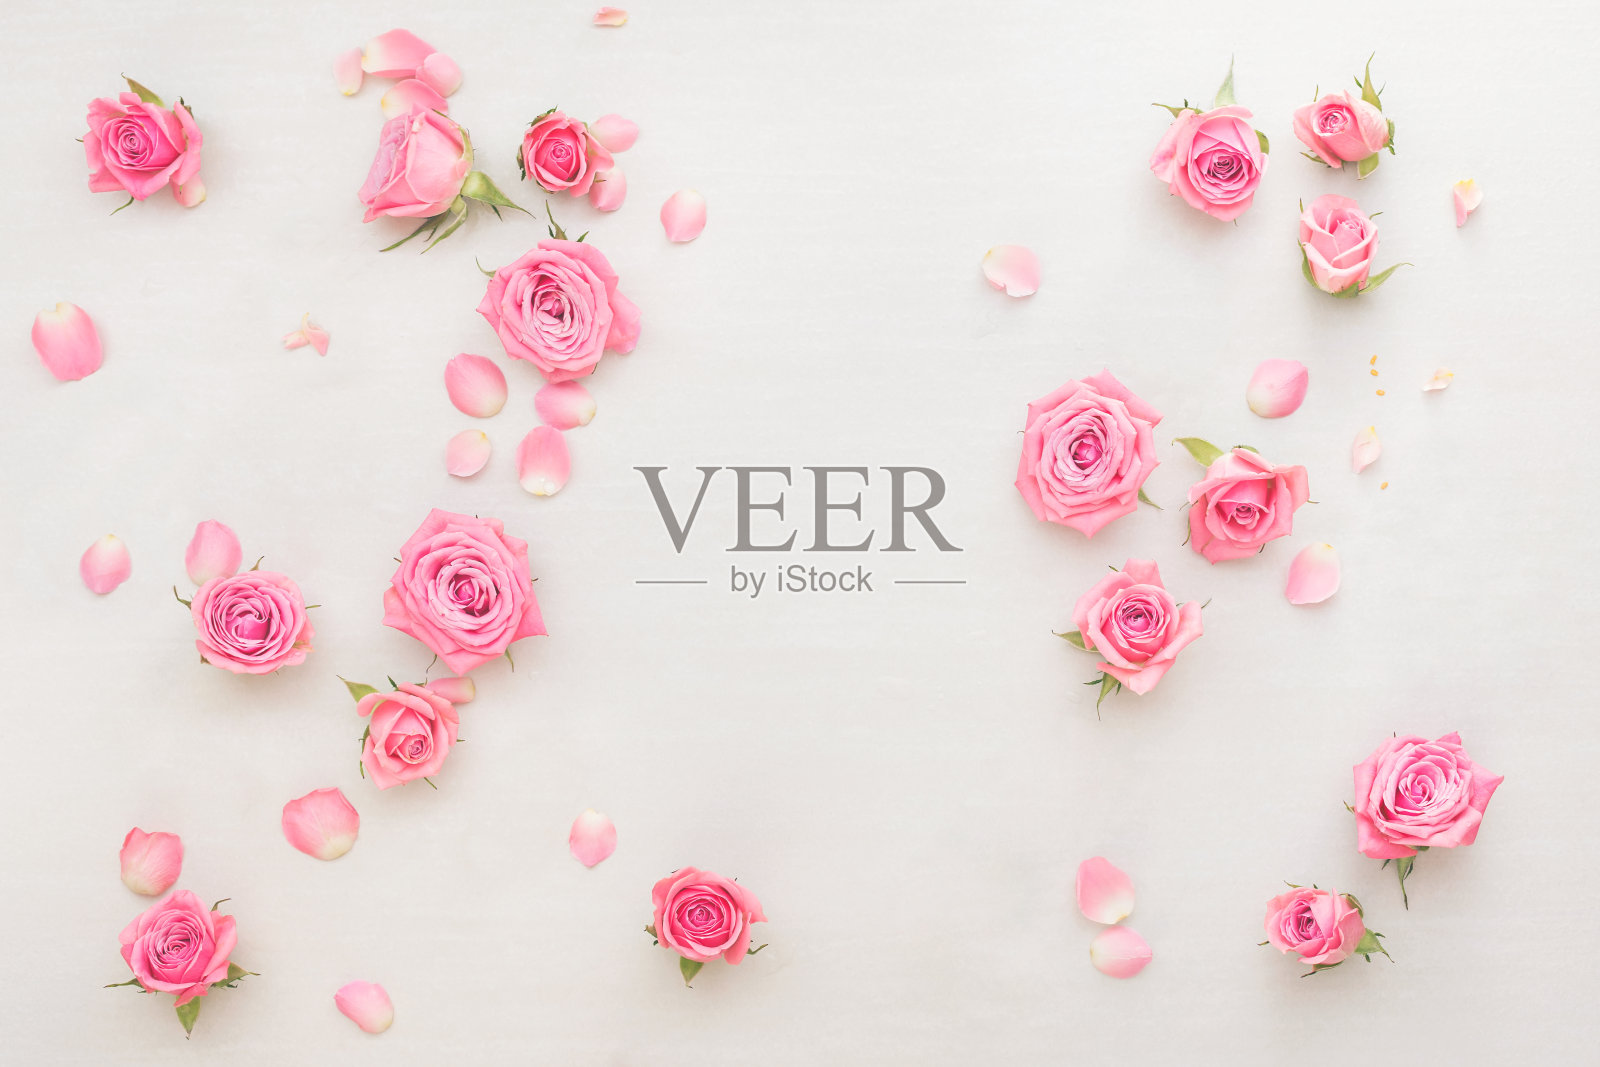 粉红色的玫瑰花蕾和花瓣散落在白色的背景上插画图片素材